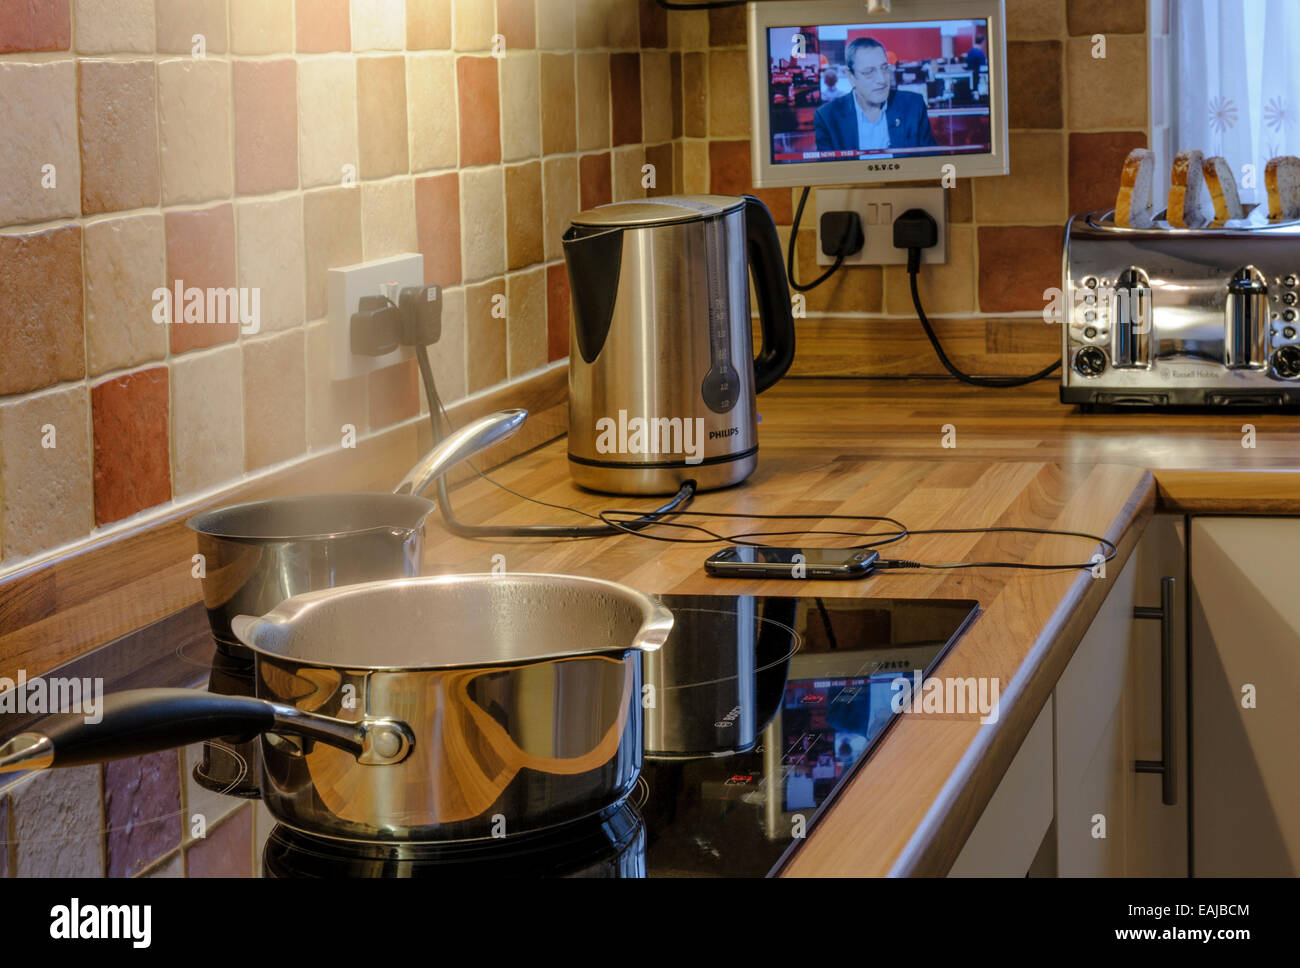 Viele Geräte in einer modernen Küche verwendet wird. Schweren elektrischen Verbrauch. Stockfoto